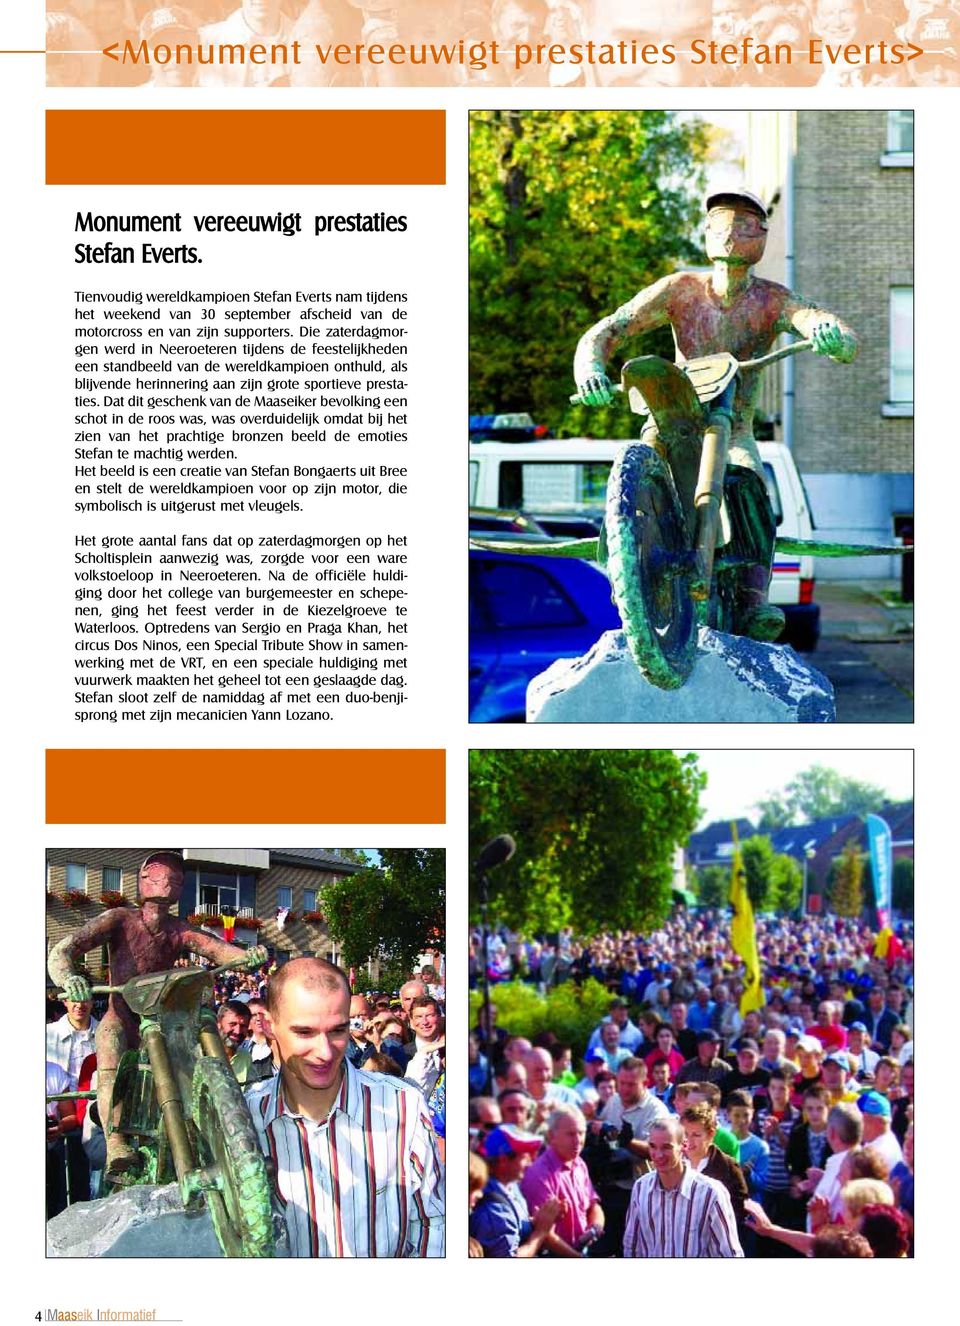 Die zaterdagmorgen werd in Neeroeteren tijdens de feestelijkheden een standbeeld van de wereldkampioen onthuld, als blijvende herinnering aan zijn grote sportieve prestaties.